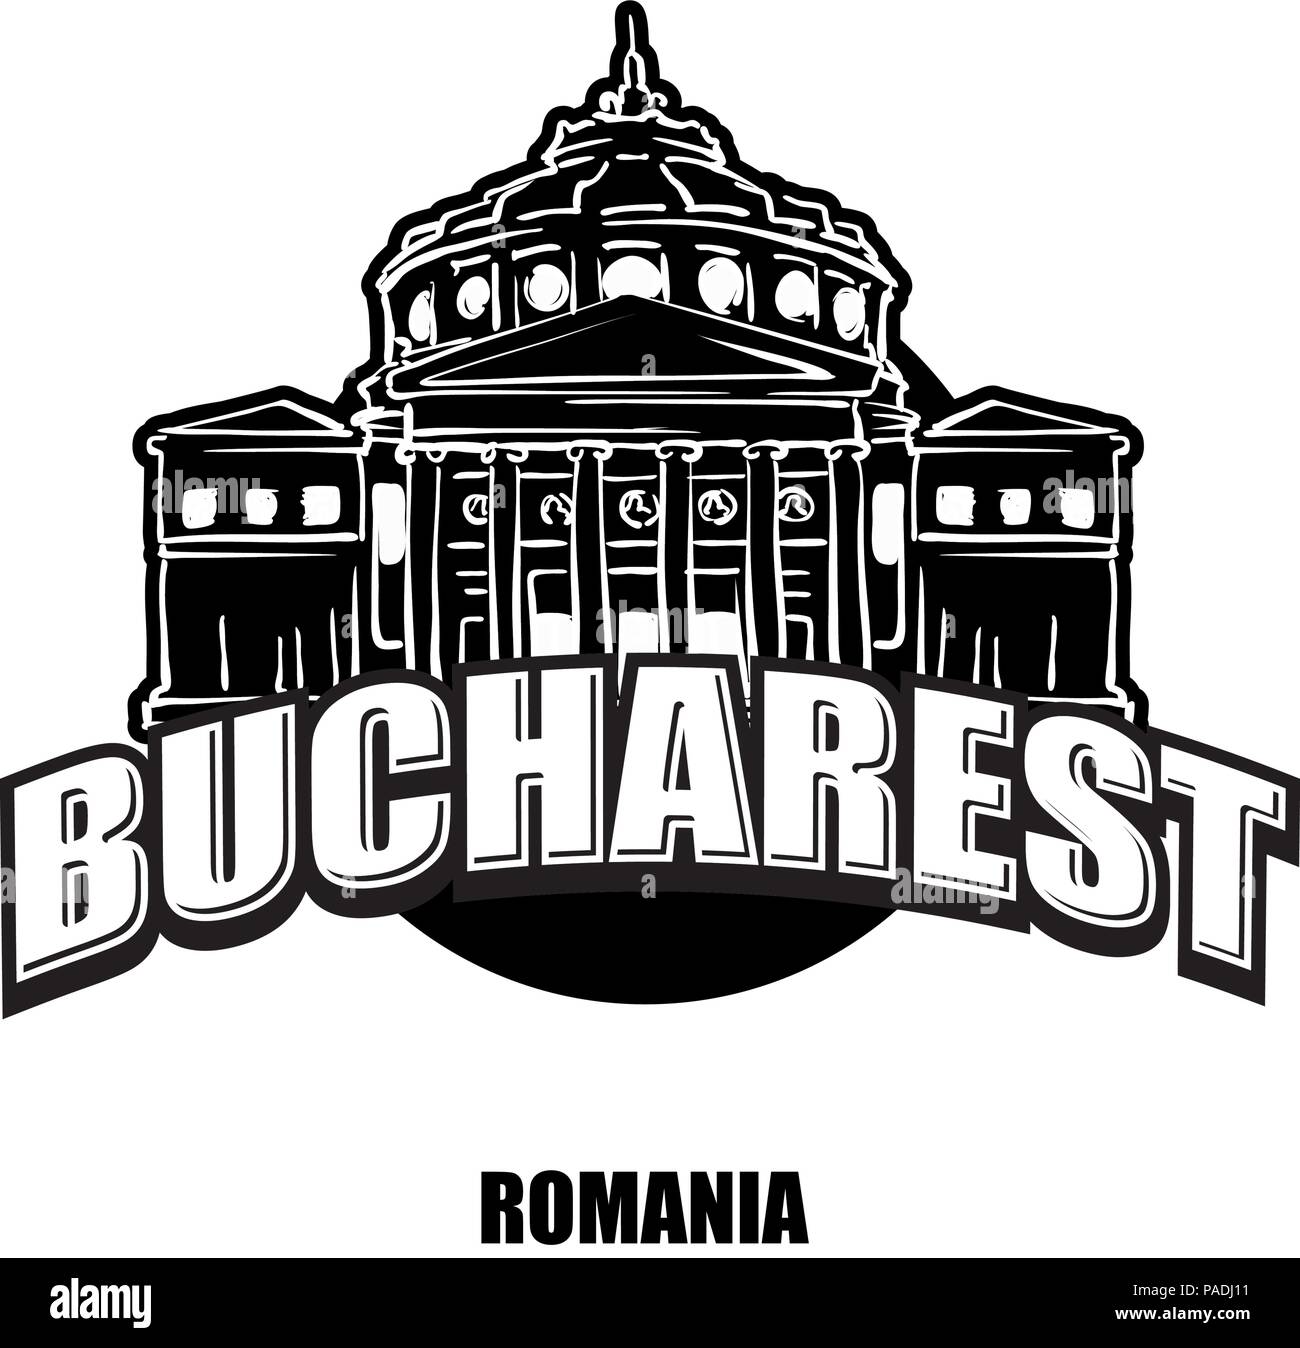 Bukarest, Rumänien, schwarz-weiss Logo für hochwertige Ausdrucke. Hand gezeichnet Vektor Skizze. Stock Vektor